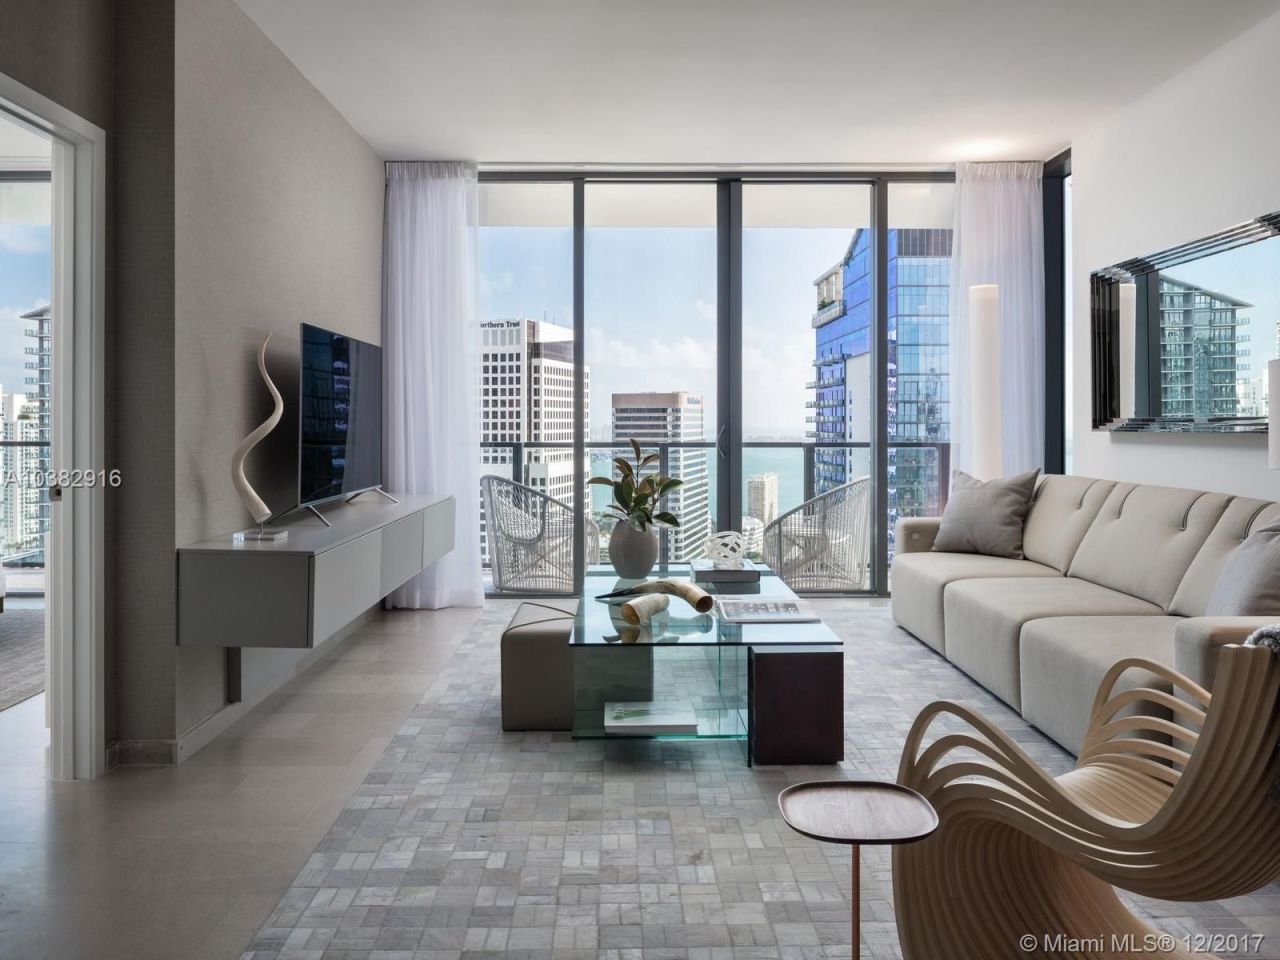 Appartement à Miami, États-Unis, 170 m2 - image 1